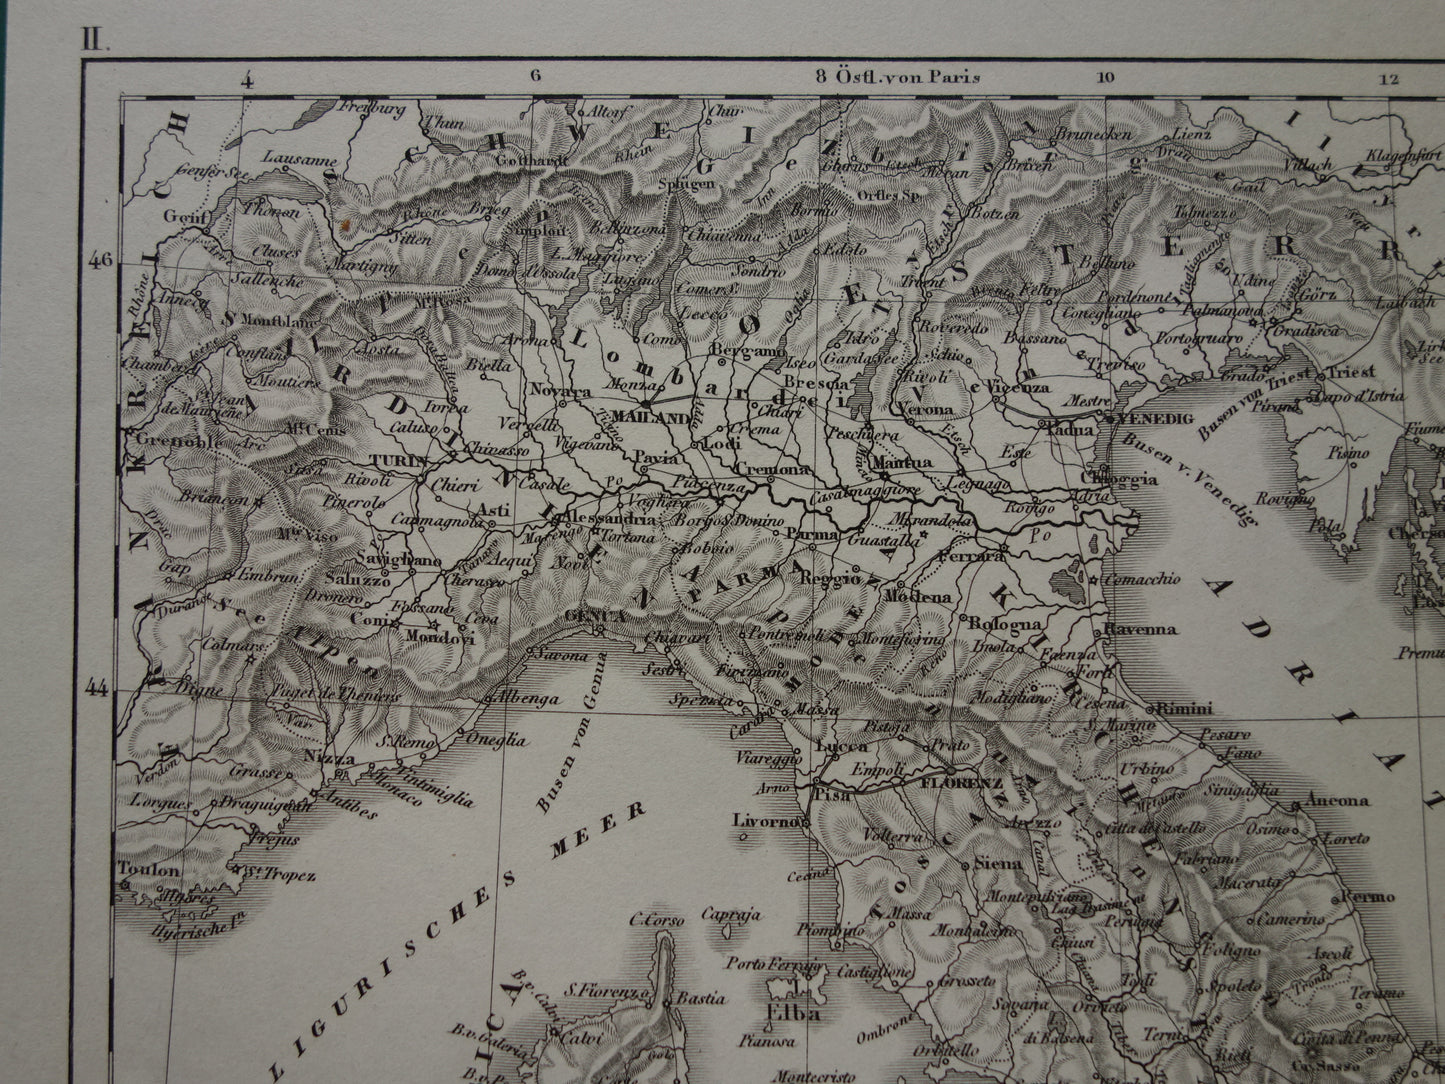 170+ jaar oude landkaart van ITALIË uit 1849 originele antieke kaart zwart/wit